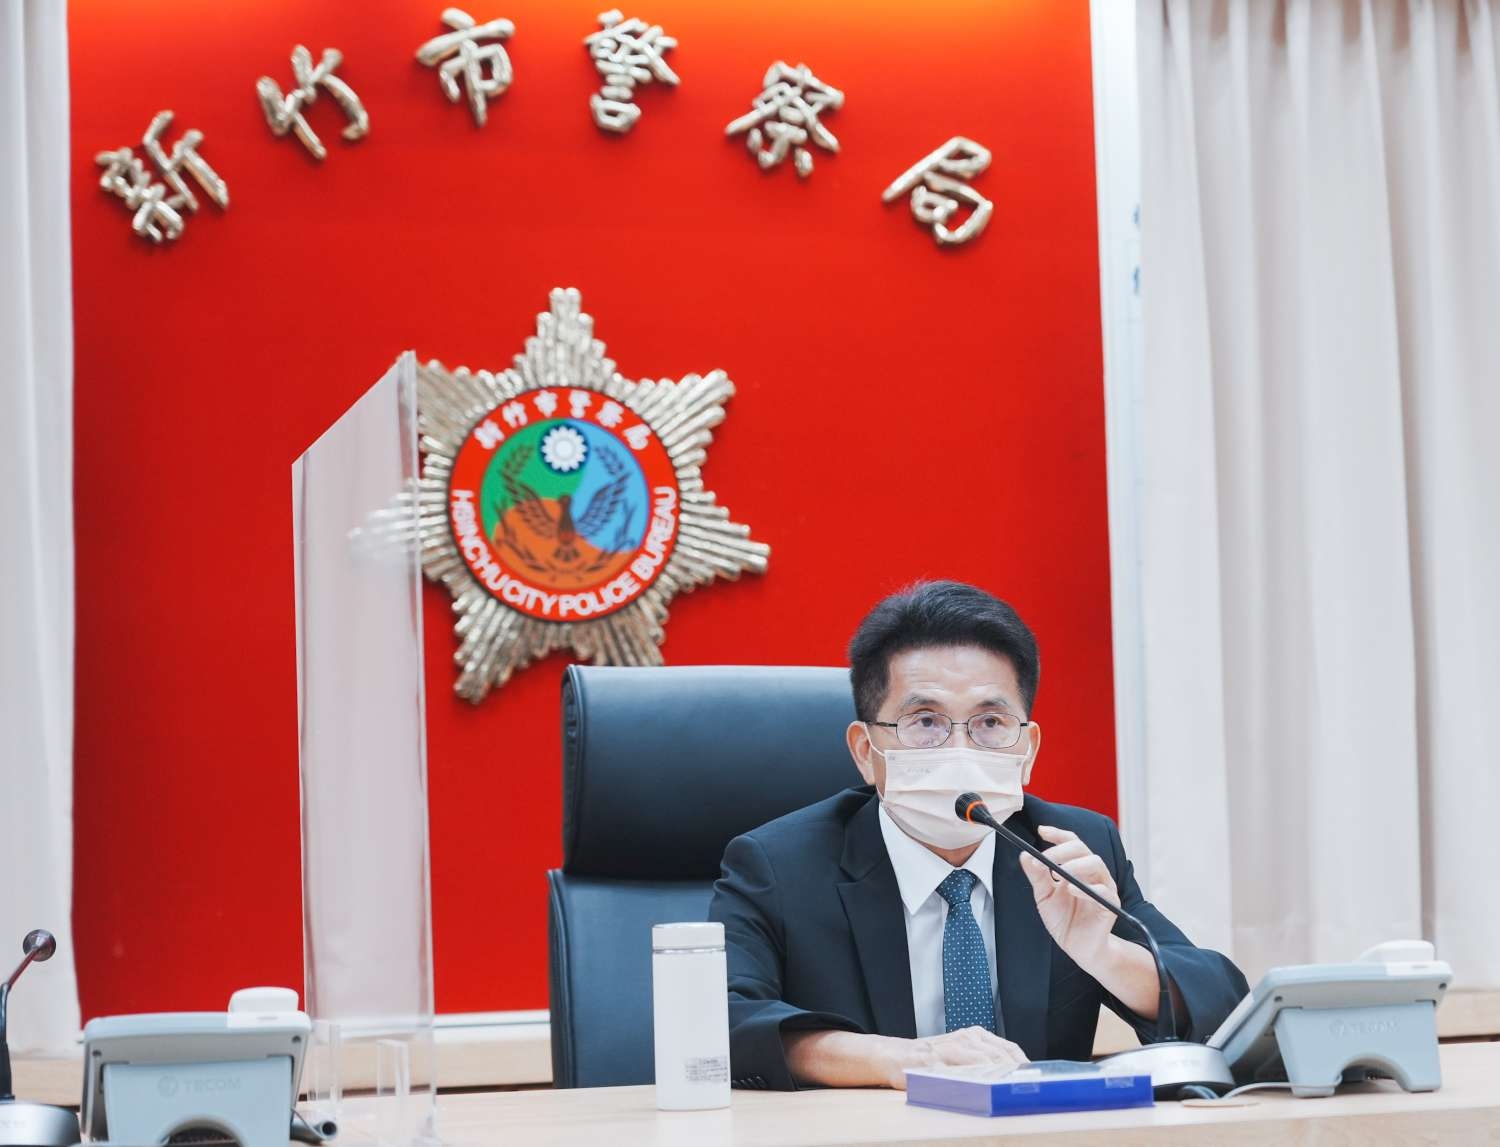 圖3. 代理市長陳章賢代表全體市民朋友感謝所有警察弟兄。|